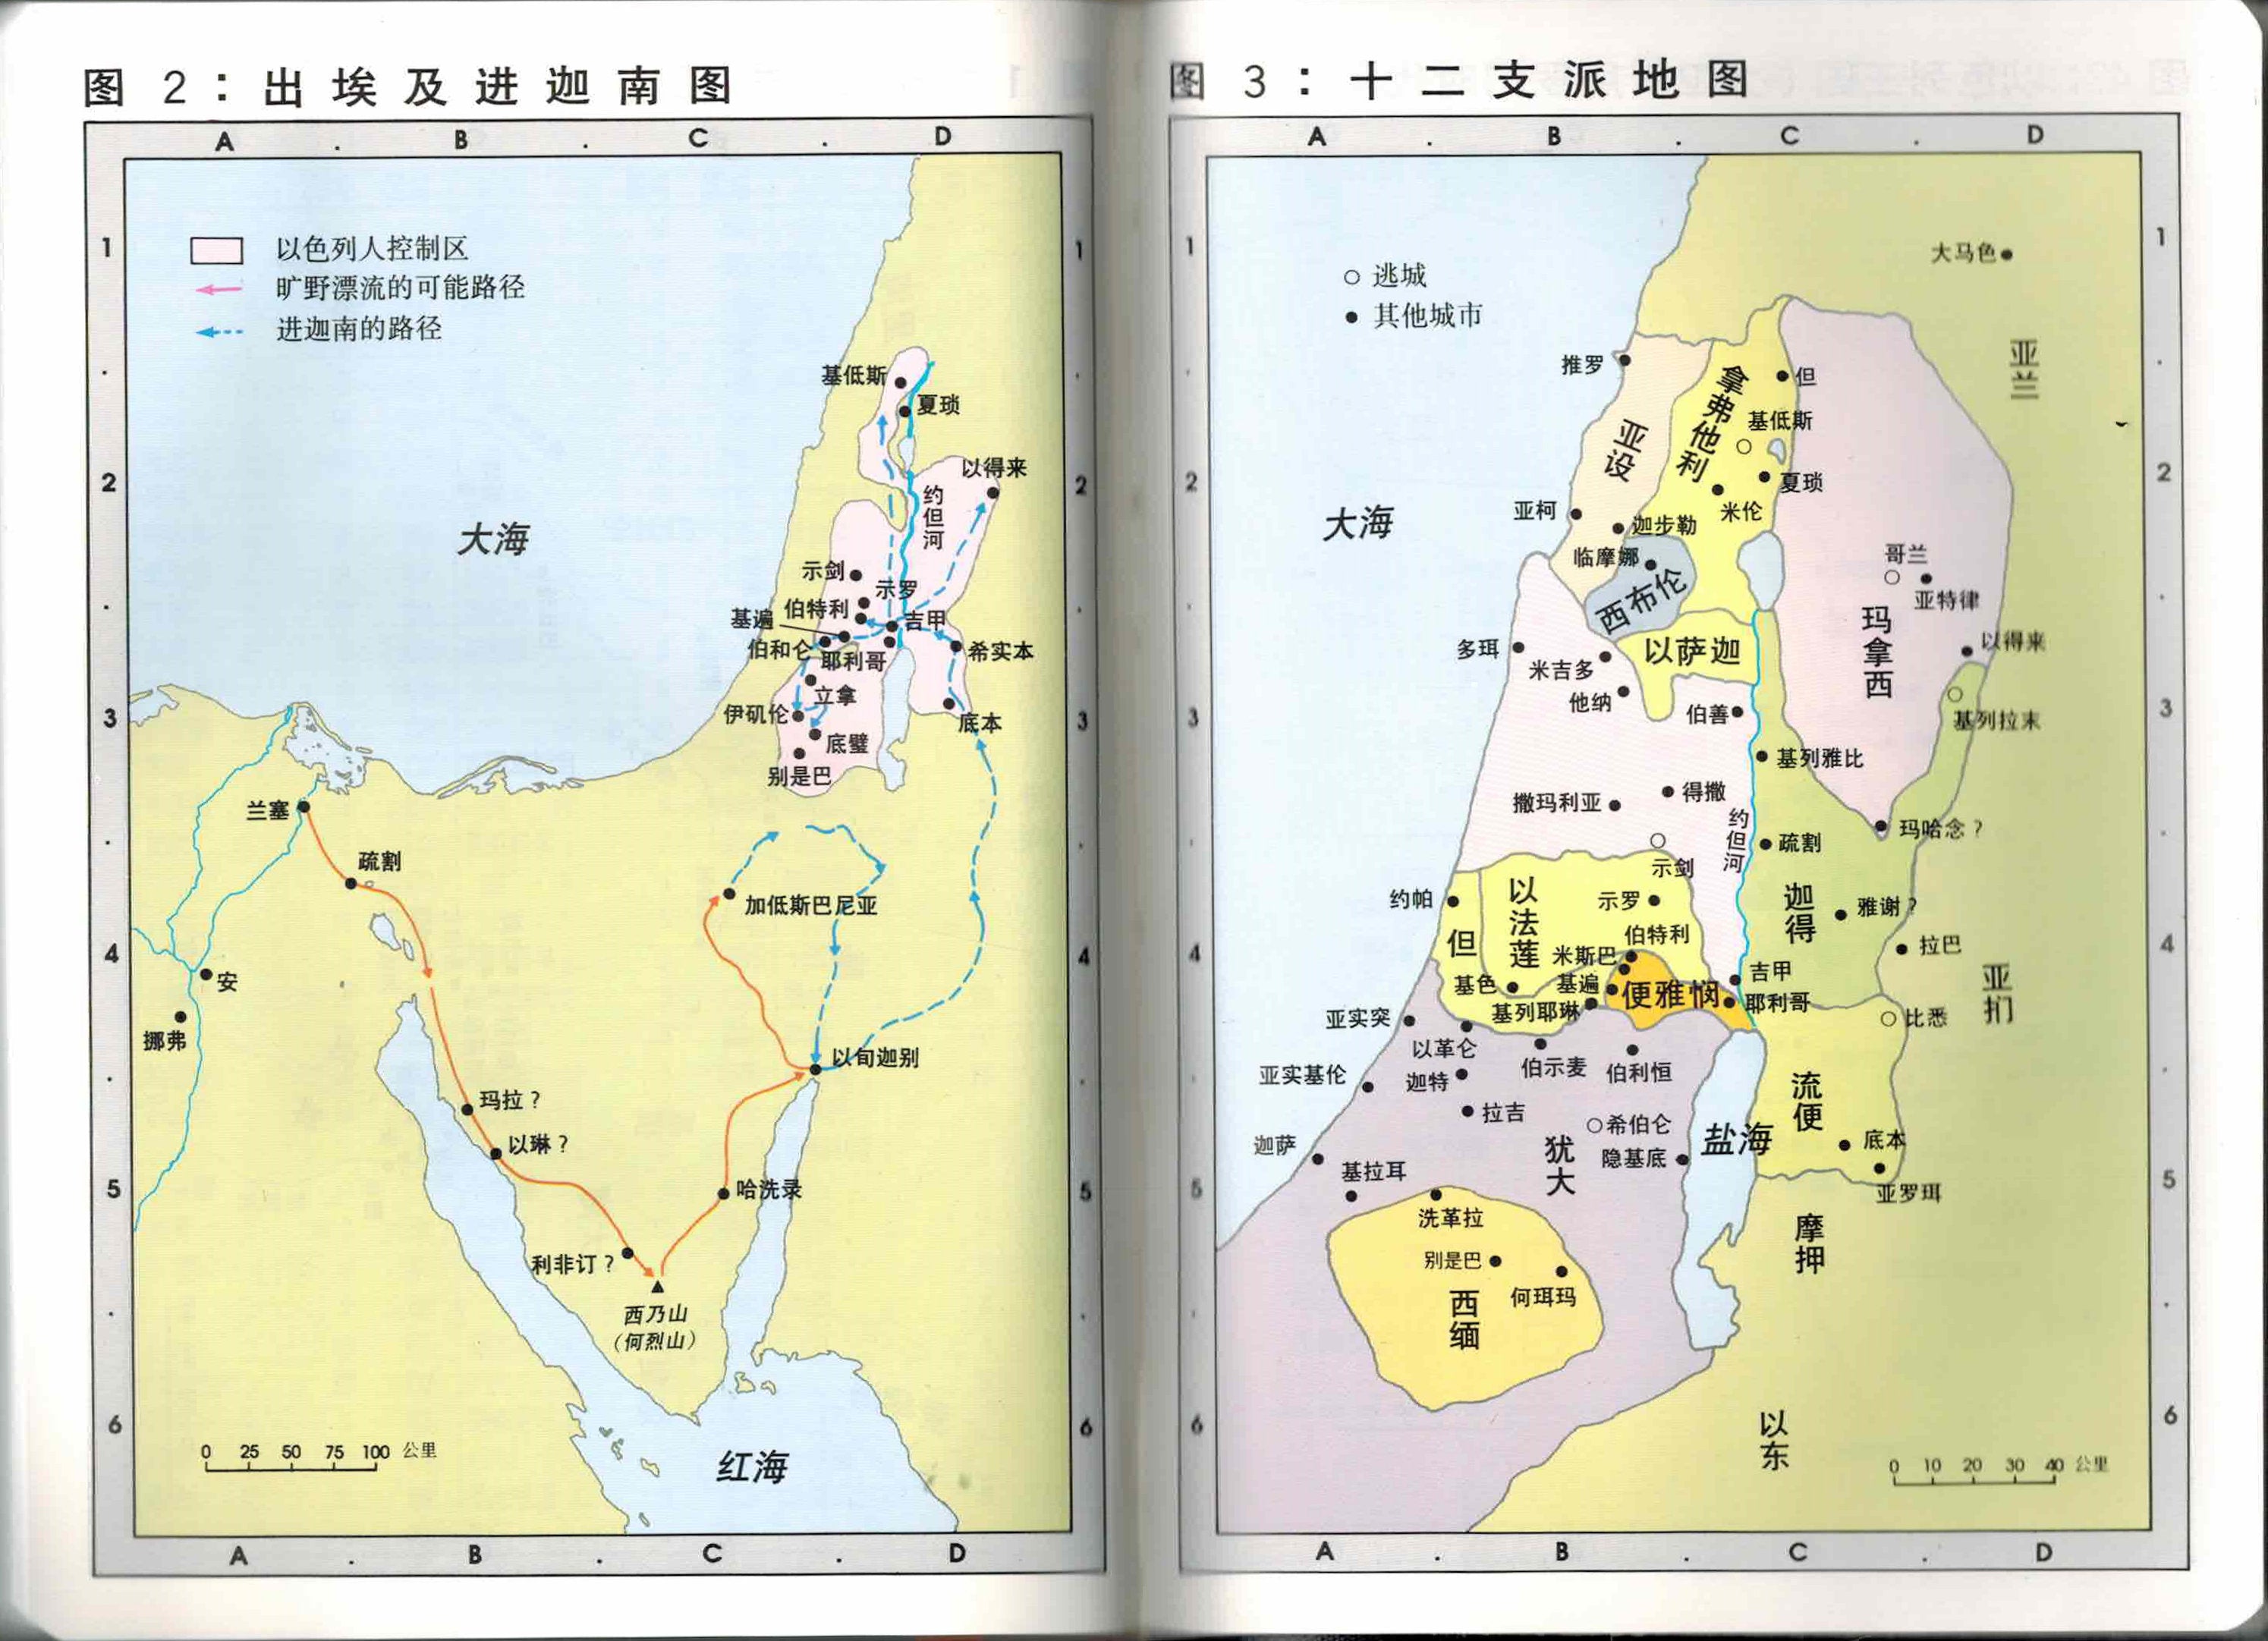 大字和合本聖經 (簡) Chinese Union Version Bible-Large print-Font Size 10.5 (CUV)